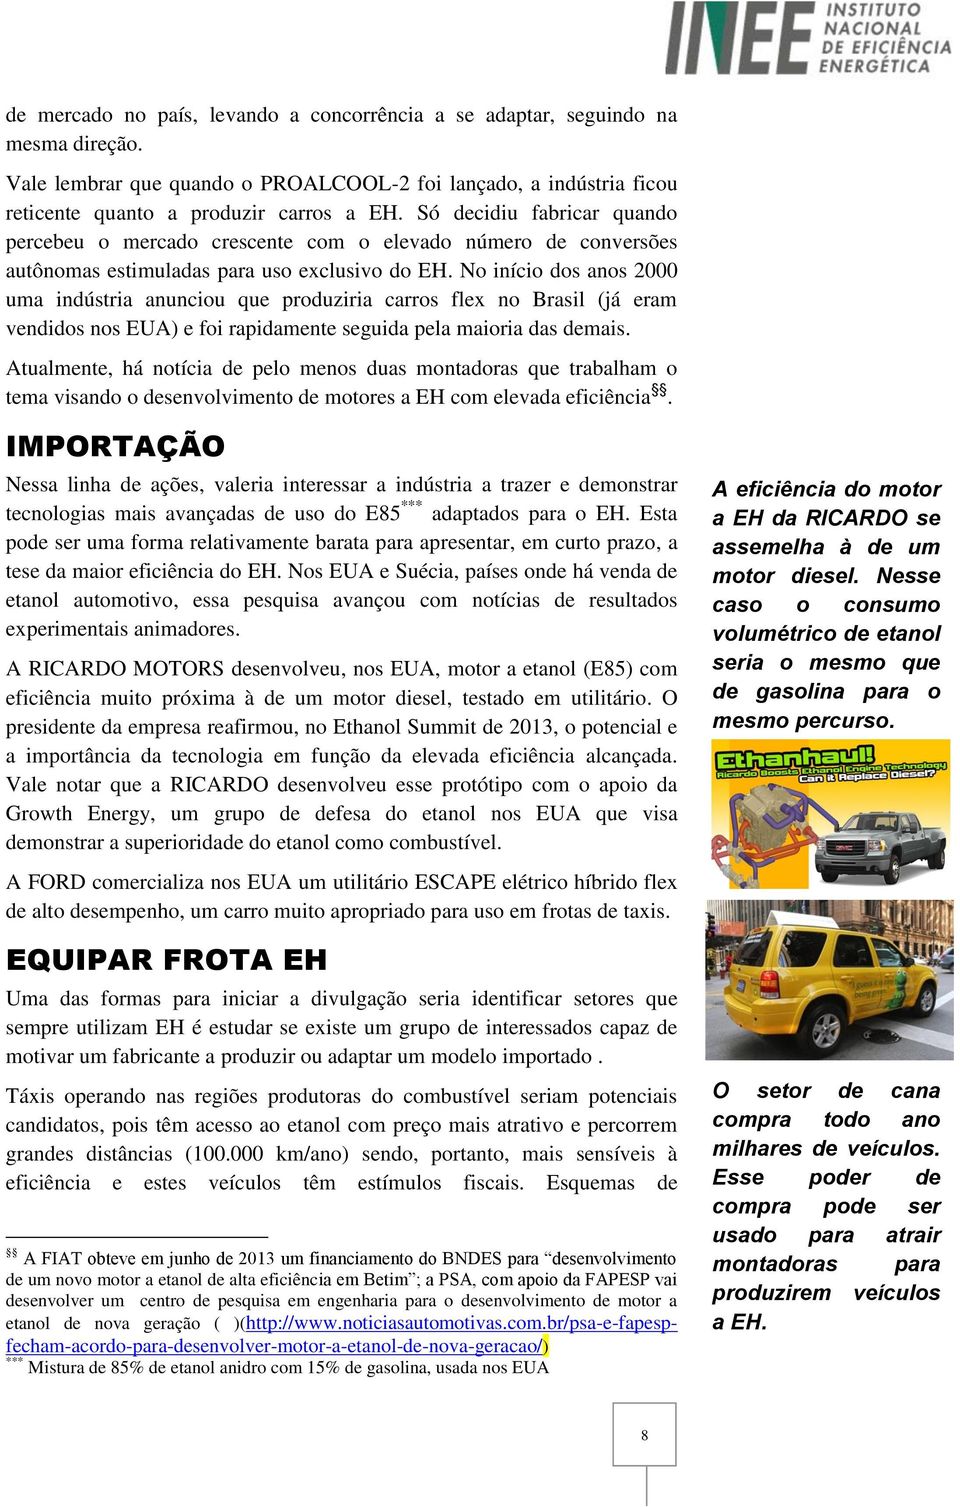 No início dos anos 2000 uma indústria anunciou que produziria carros flex no Brasil (já eram vendidos nos EUA) e foi rapidamente seguida pela maioria das demais.